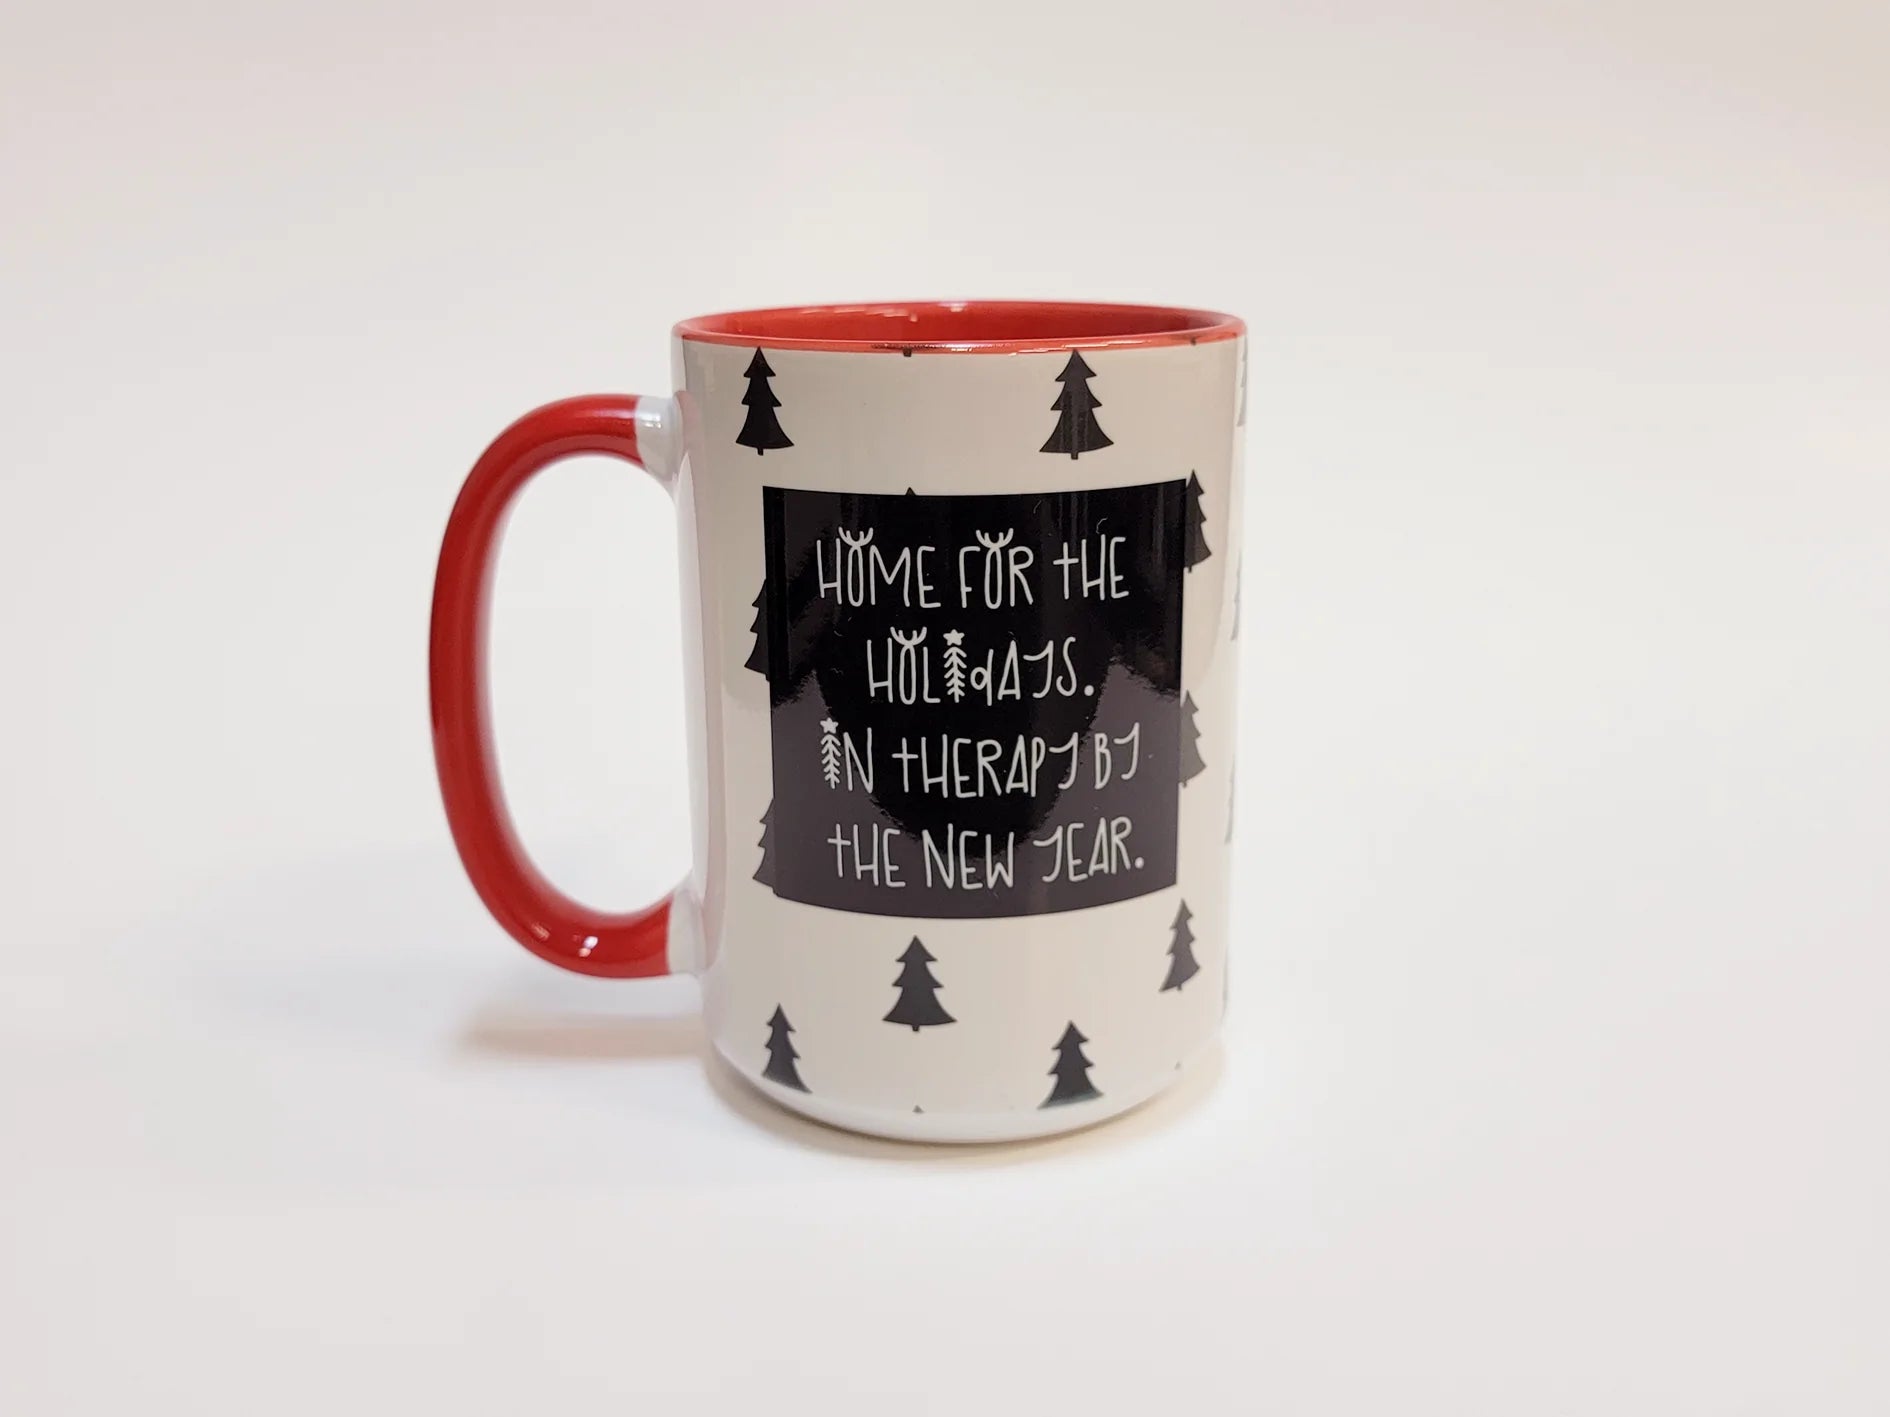 Home for the Holidays - 15 oz Ceramic Mug